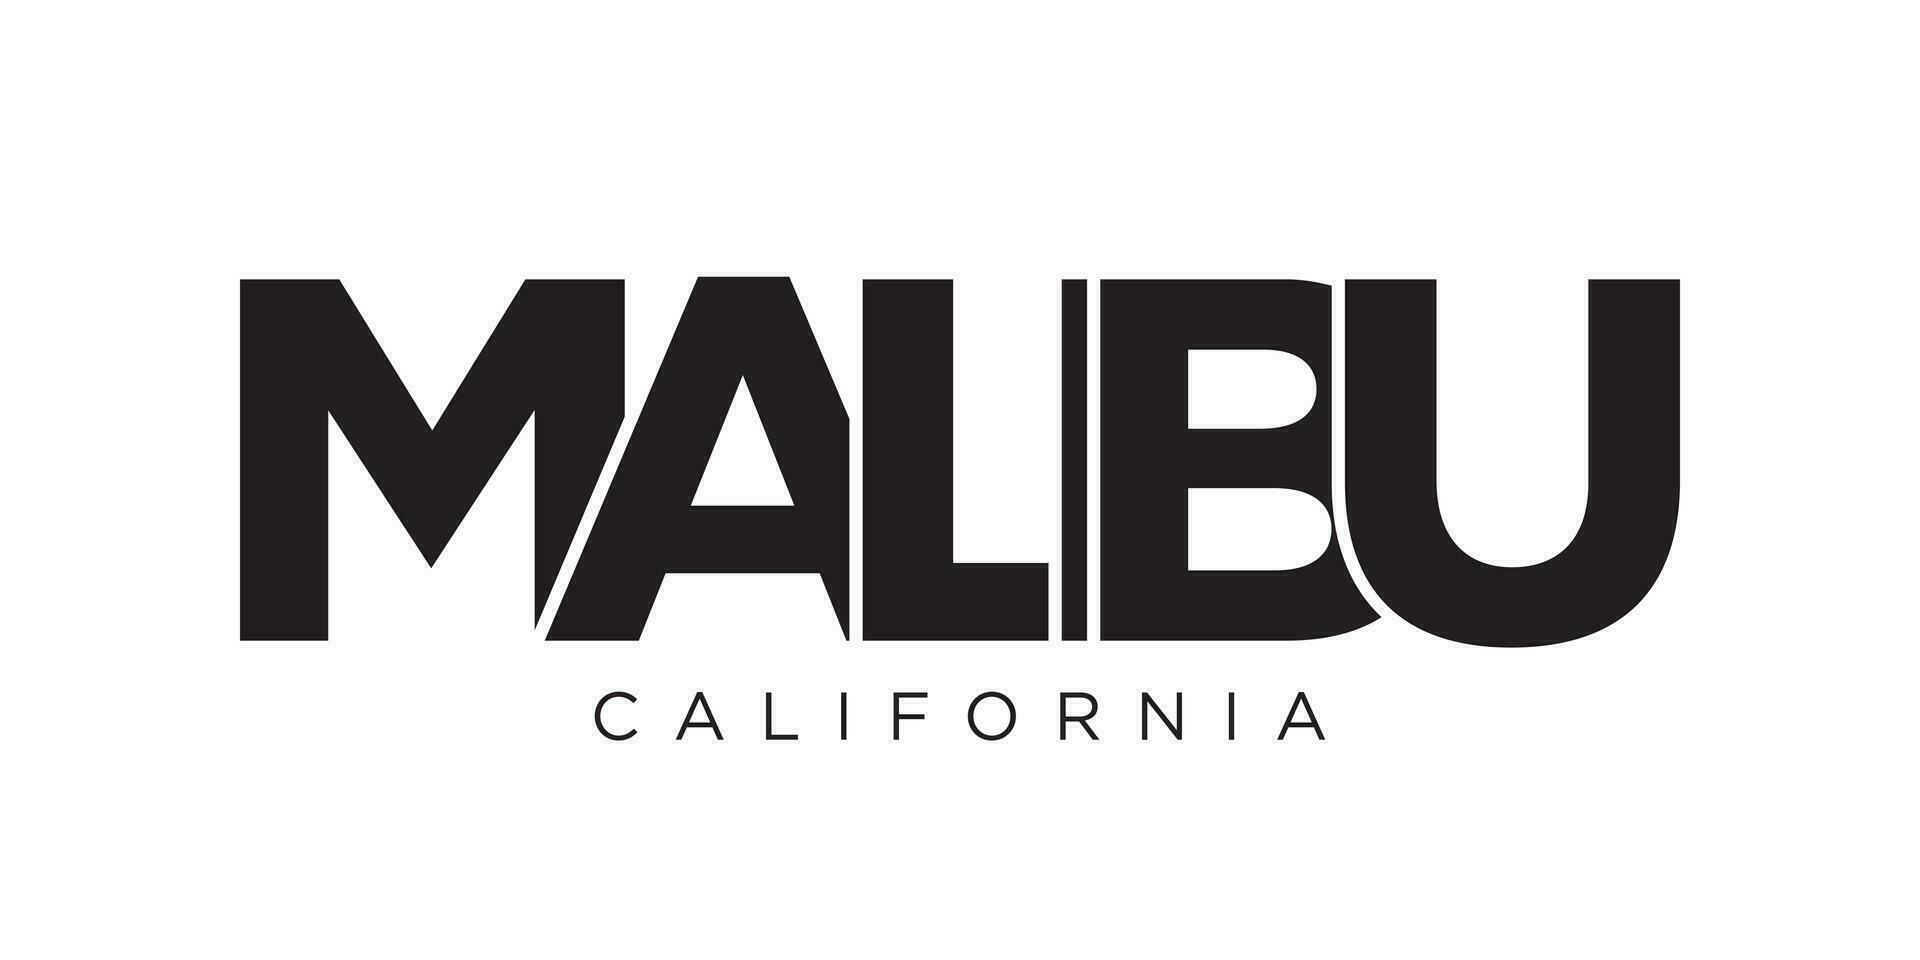 conception de slogan de typographie malibu, californie, états-unis. logo amérique avec lettrage graphique de la ville pour l'impression et le web. vecteur